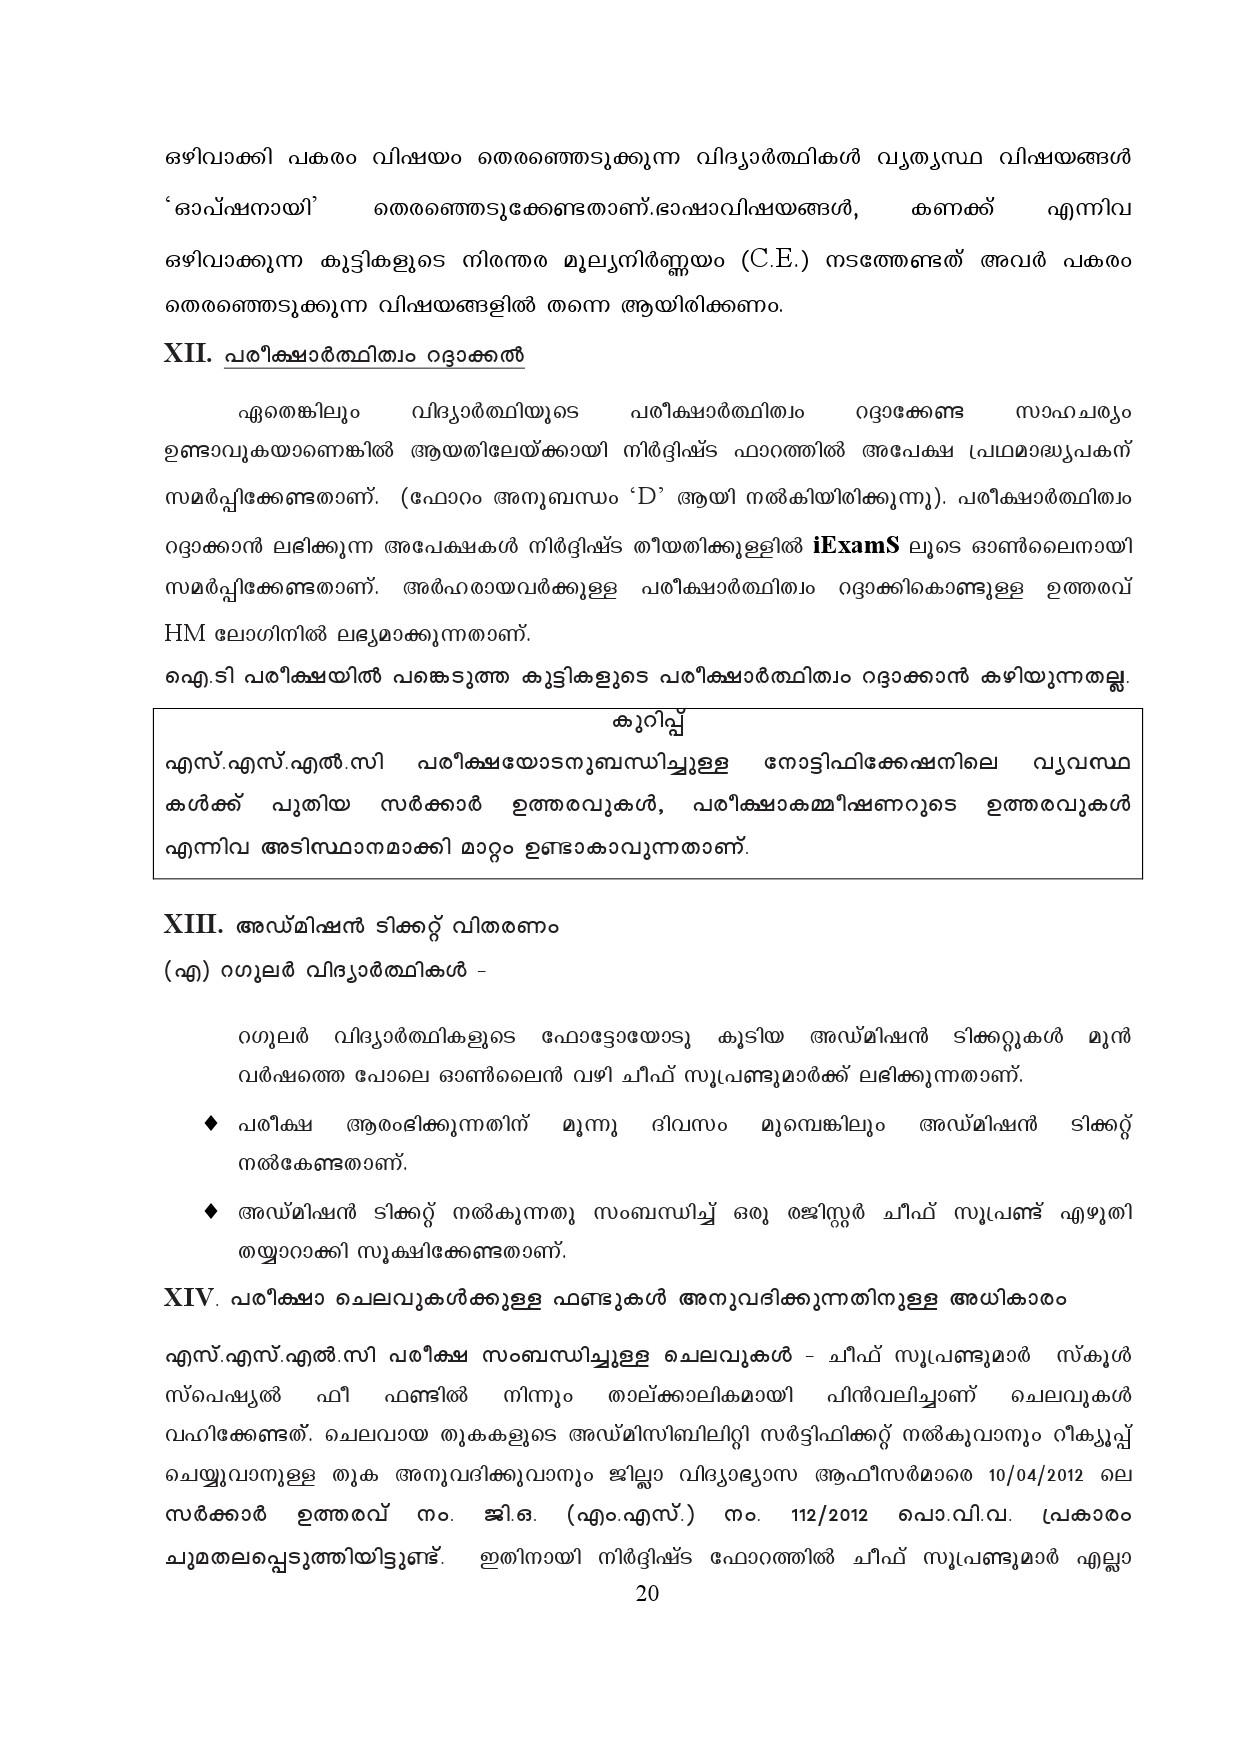 Kerala SSLC Exam Result 2019 - Notification Image 20